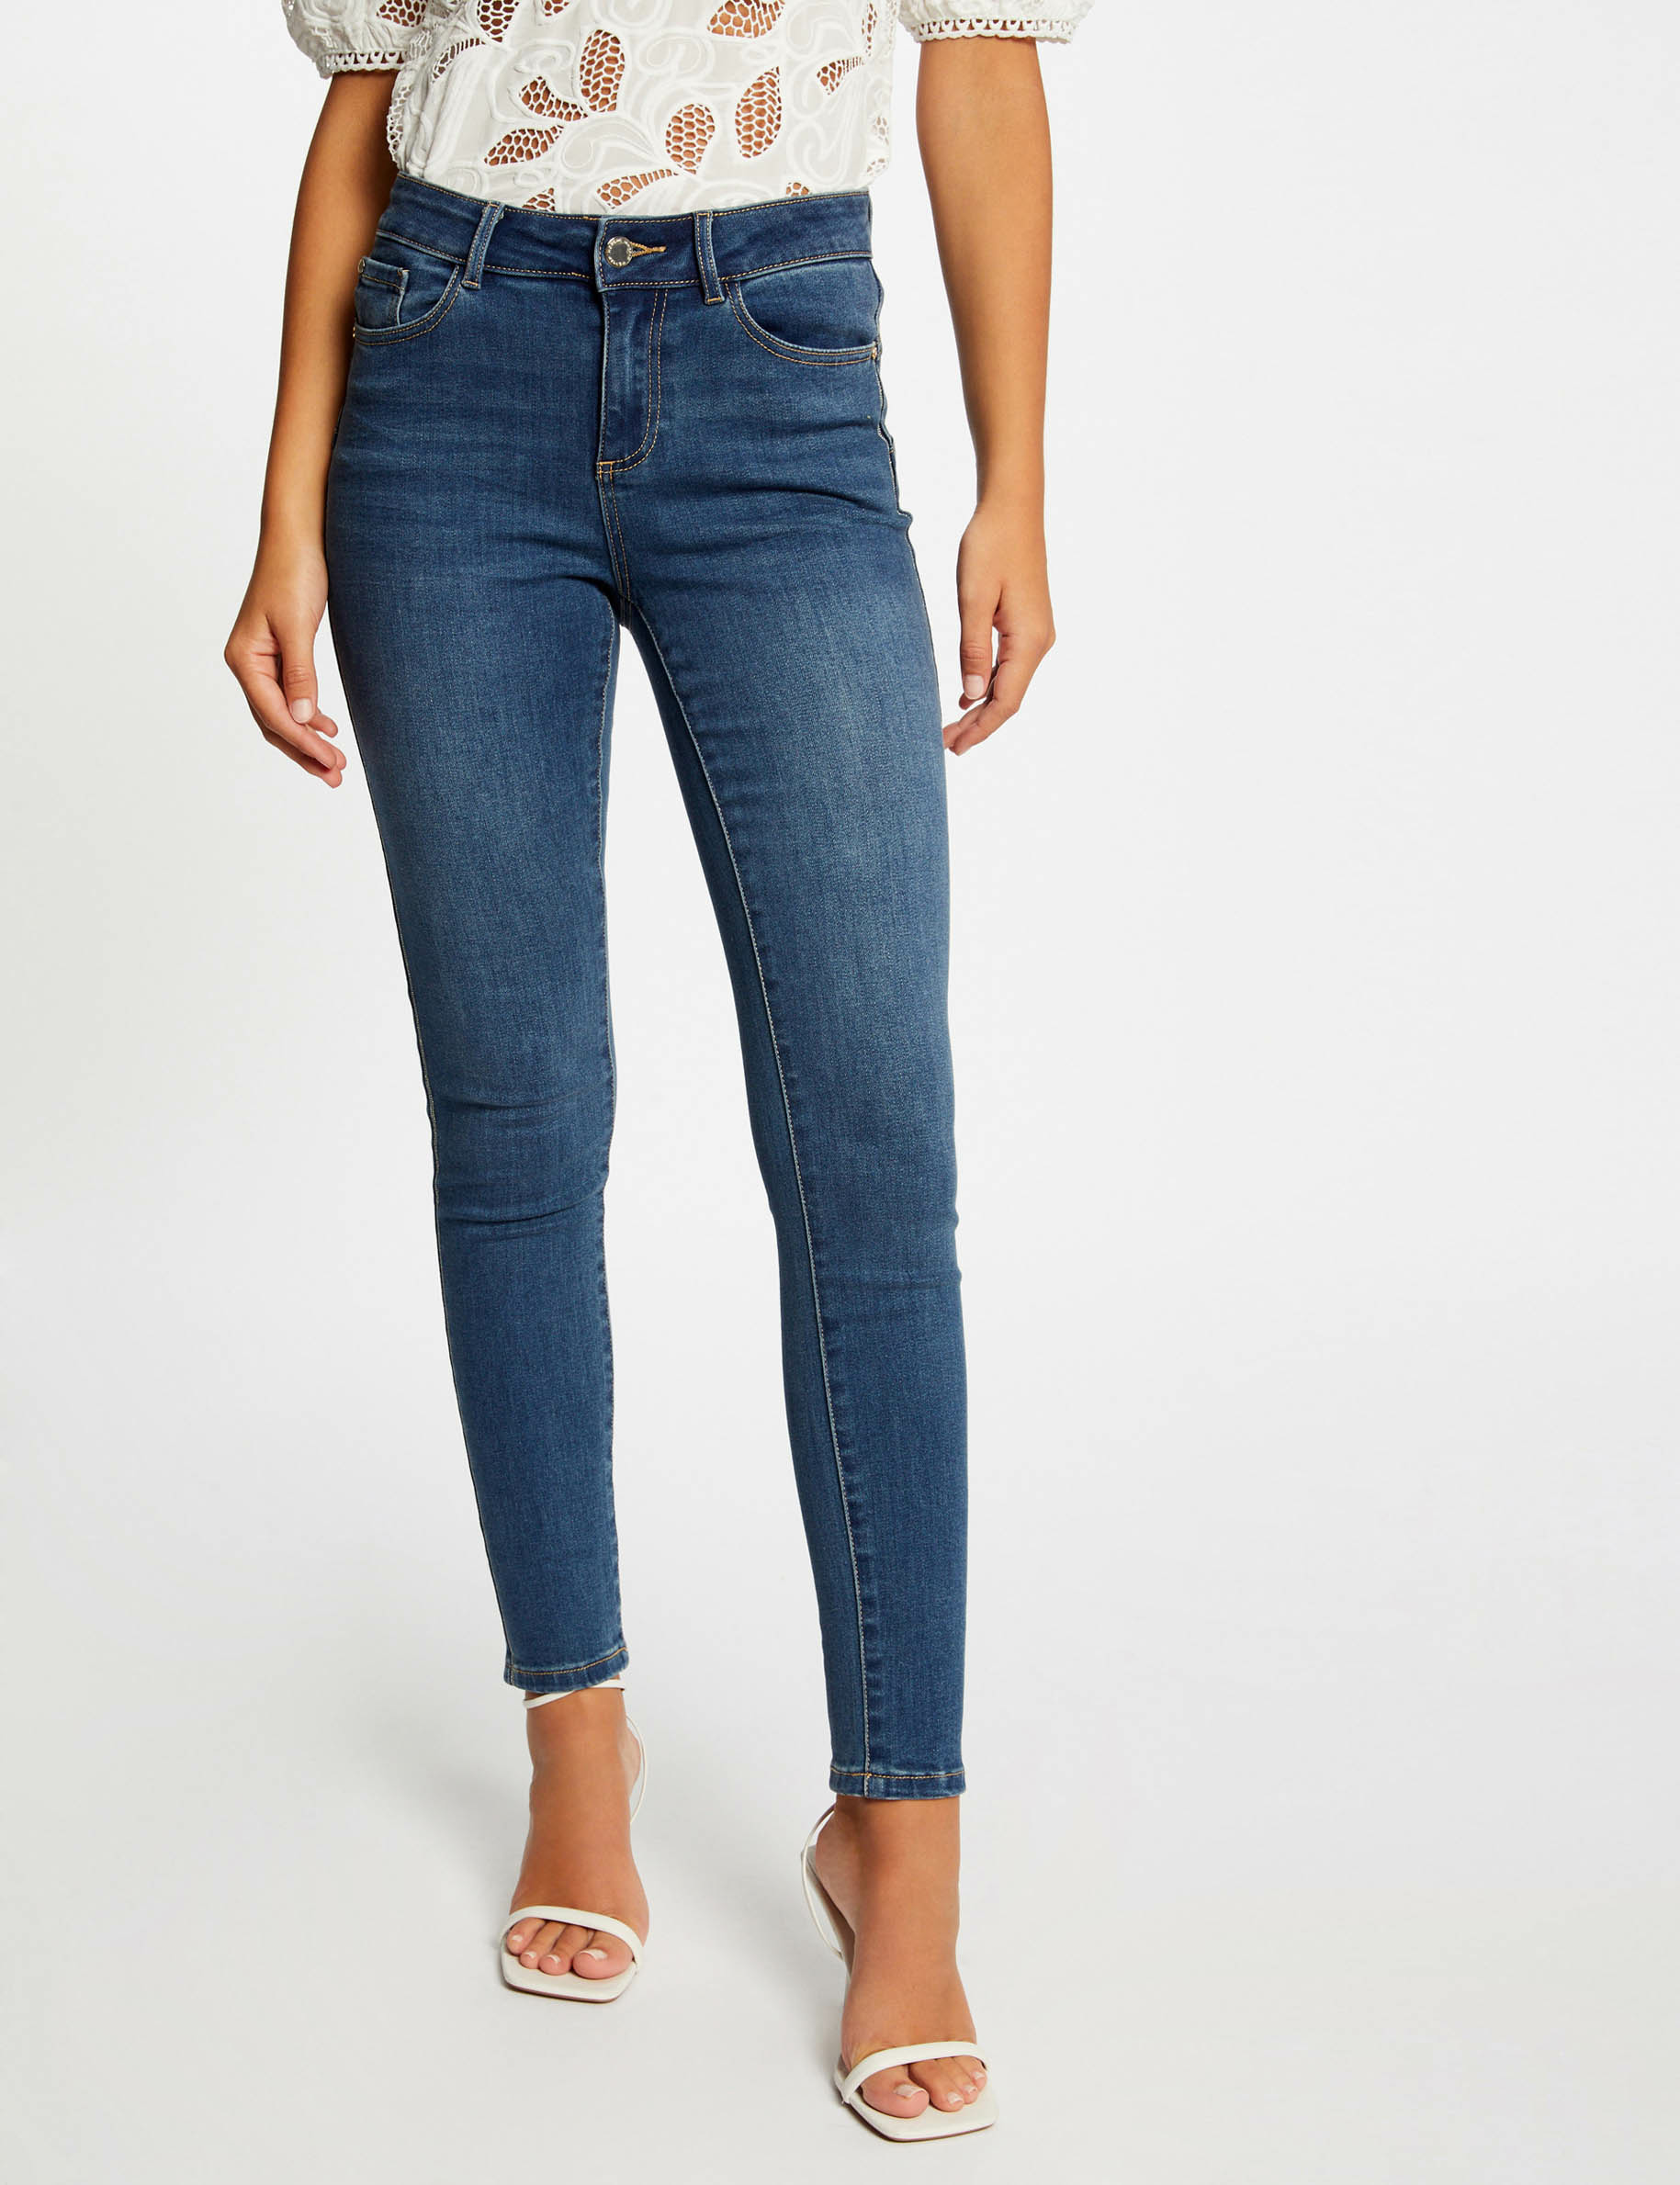 Slim jeans with metallised edgings stone denim ladies'